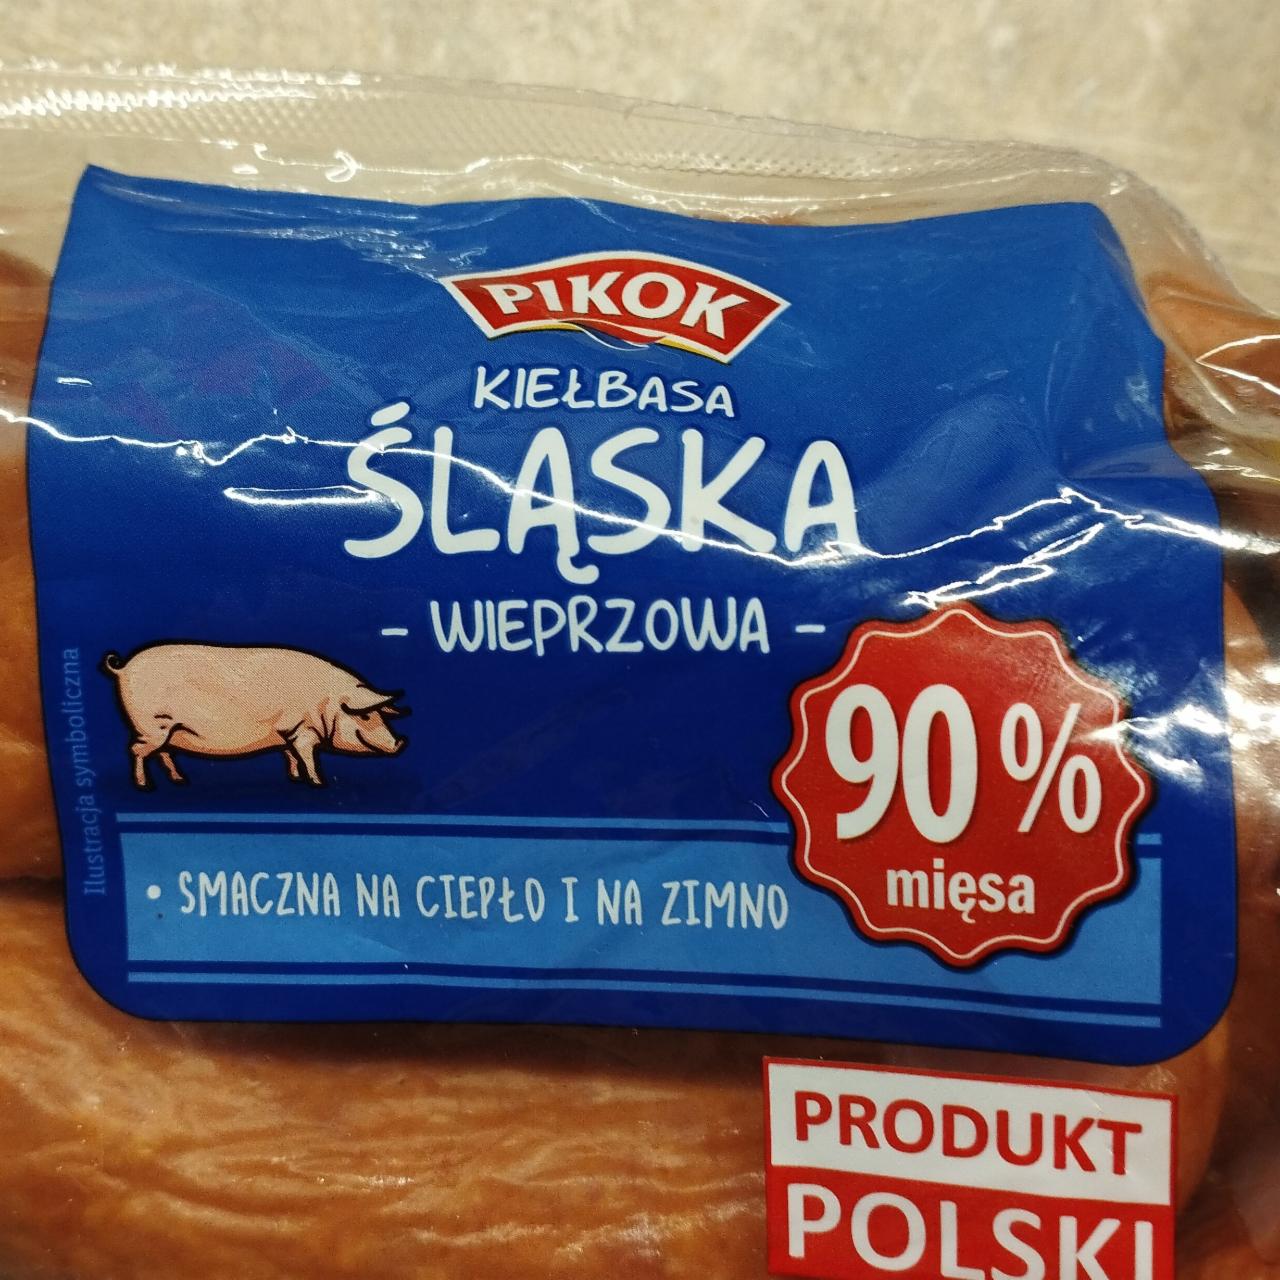 Fotografie - Kiełbasa śląska wieprzowa 90% Pikok